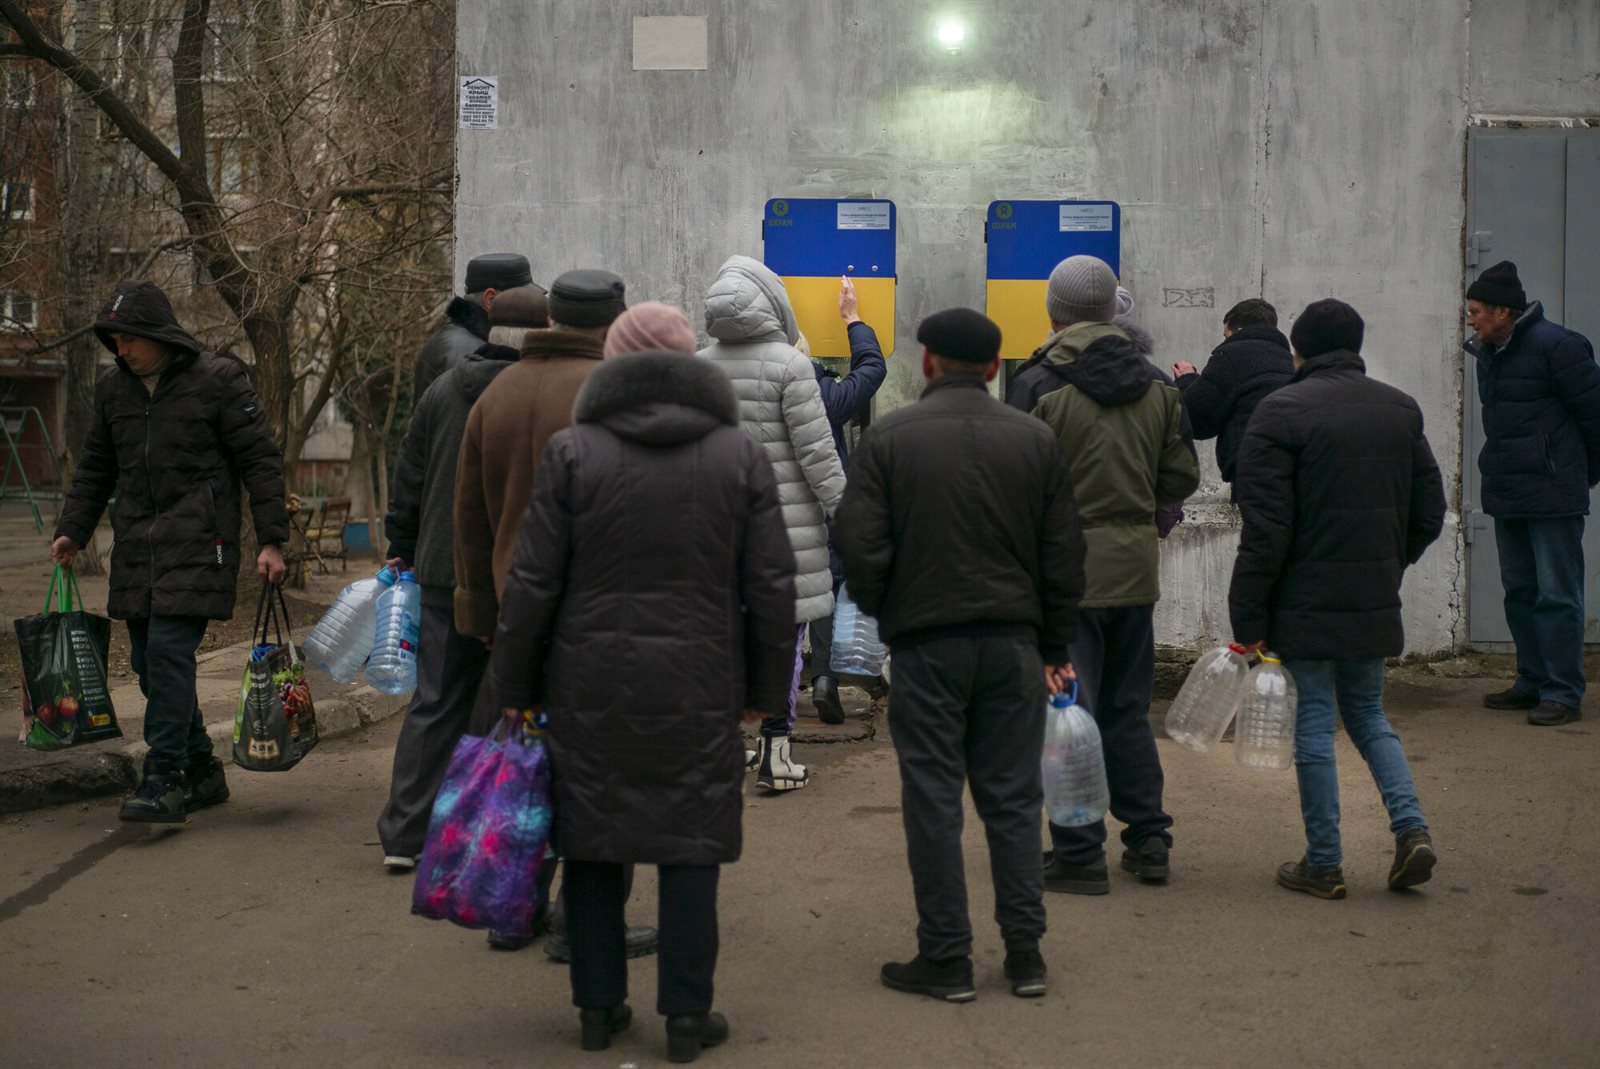 Mensen staan in de rij bij waterpunten in Oekraïne